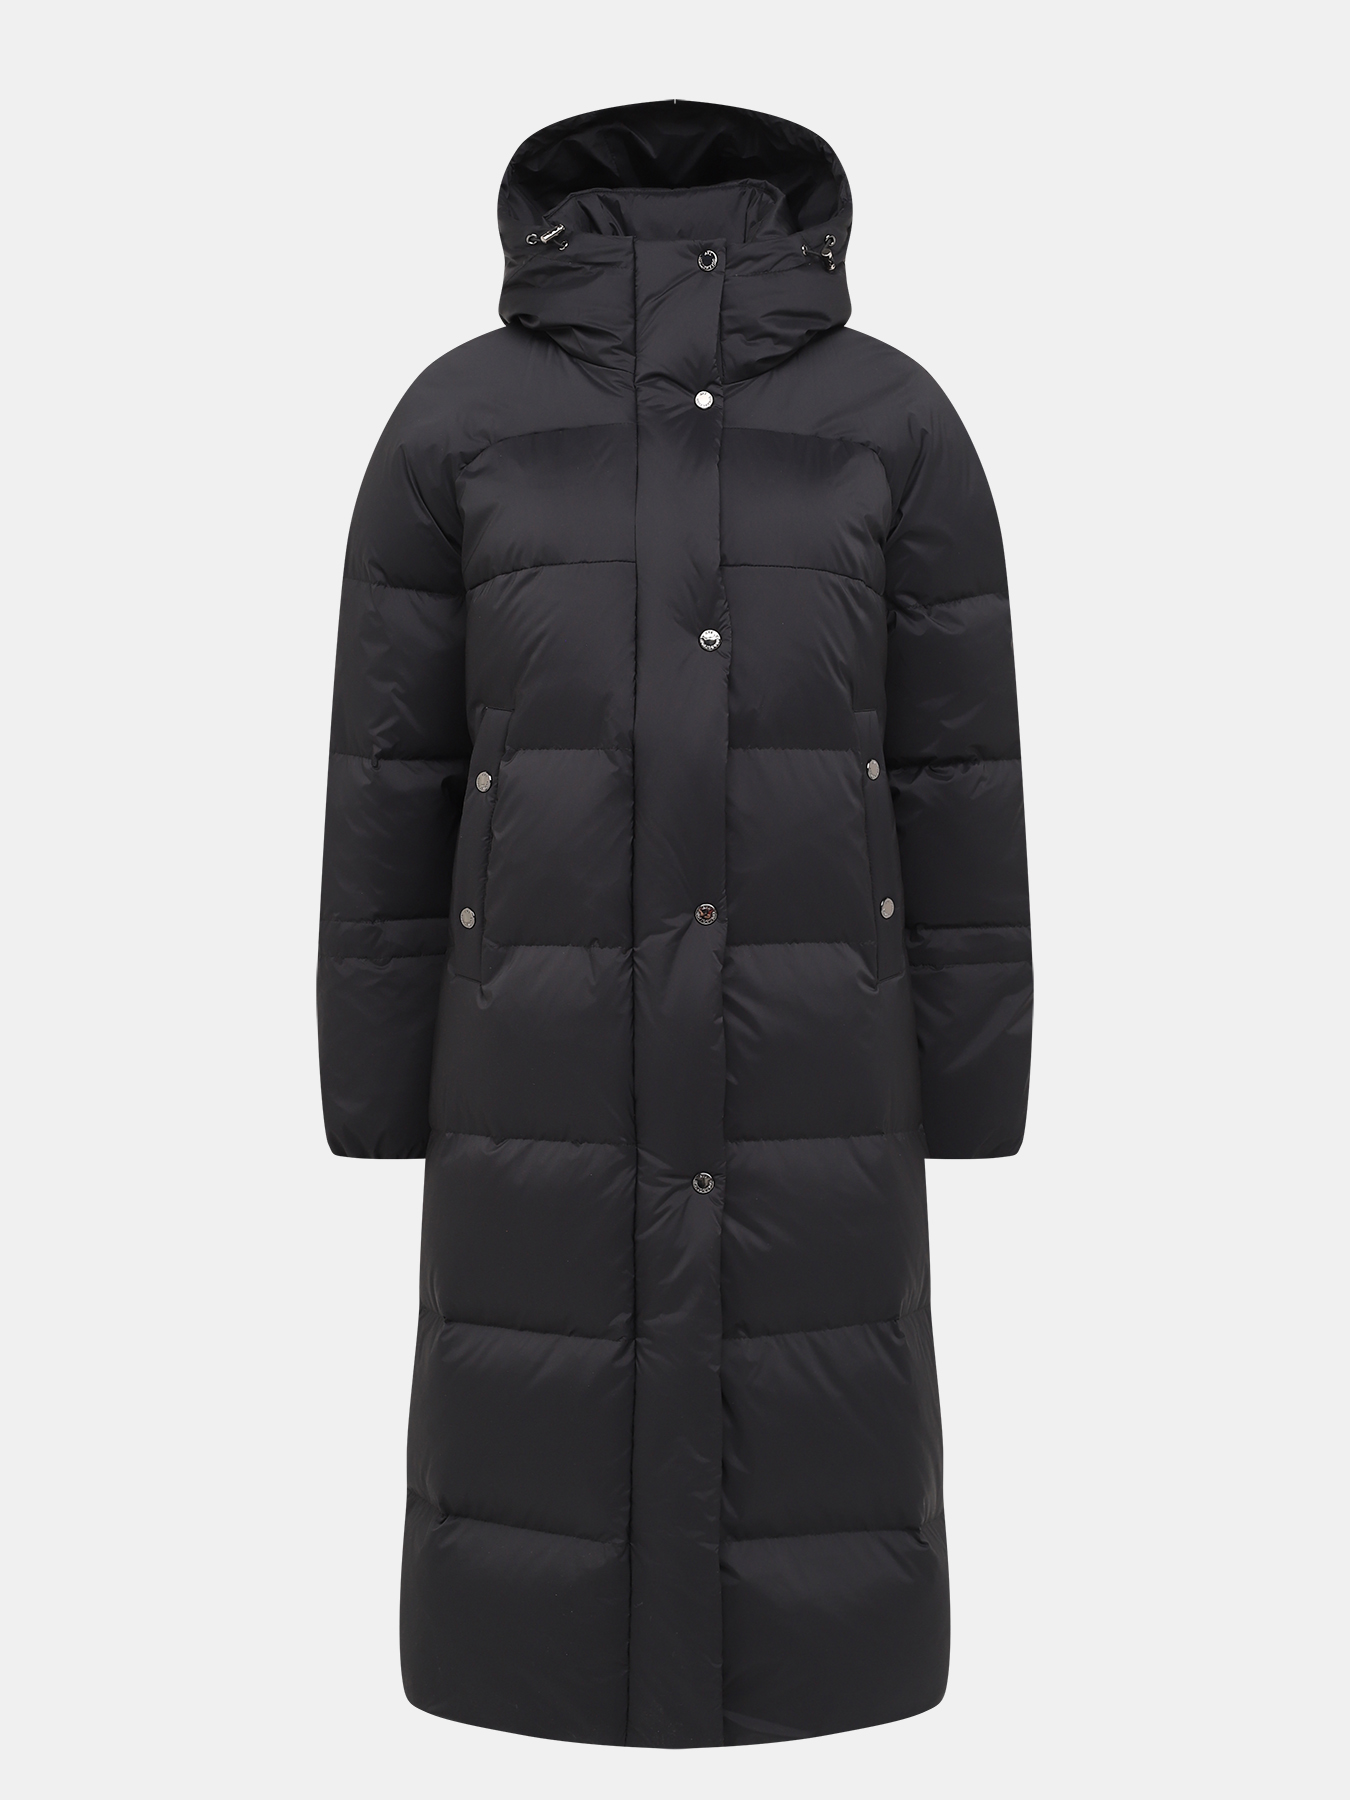 Пальто зимнее AVI 433511-023, цвет темно-серый, размер 50 - фото 1